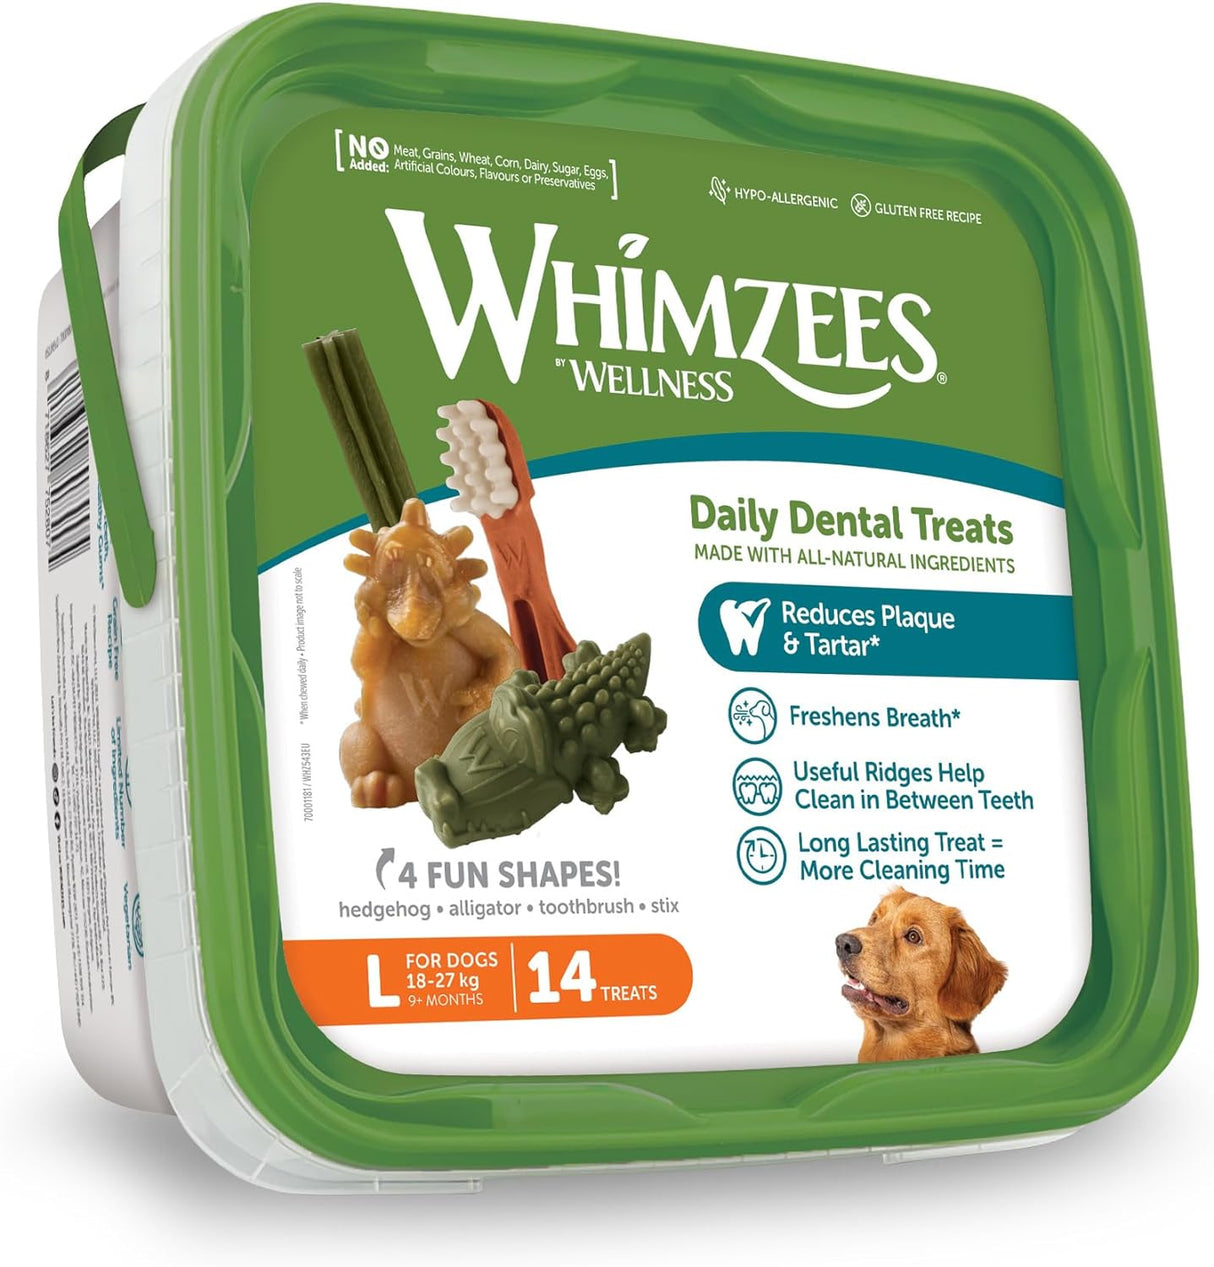 WHIMZEES by Wellness Gemischte Vielfaltsbox, Natürliche, Getreidefreie Zahnpflegesnacks, Kaustangen Für Kleine Hunde, 14 Stück, Größe L